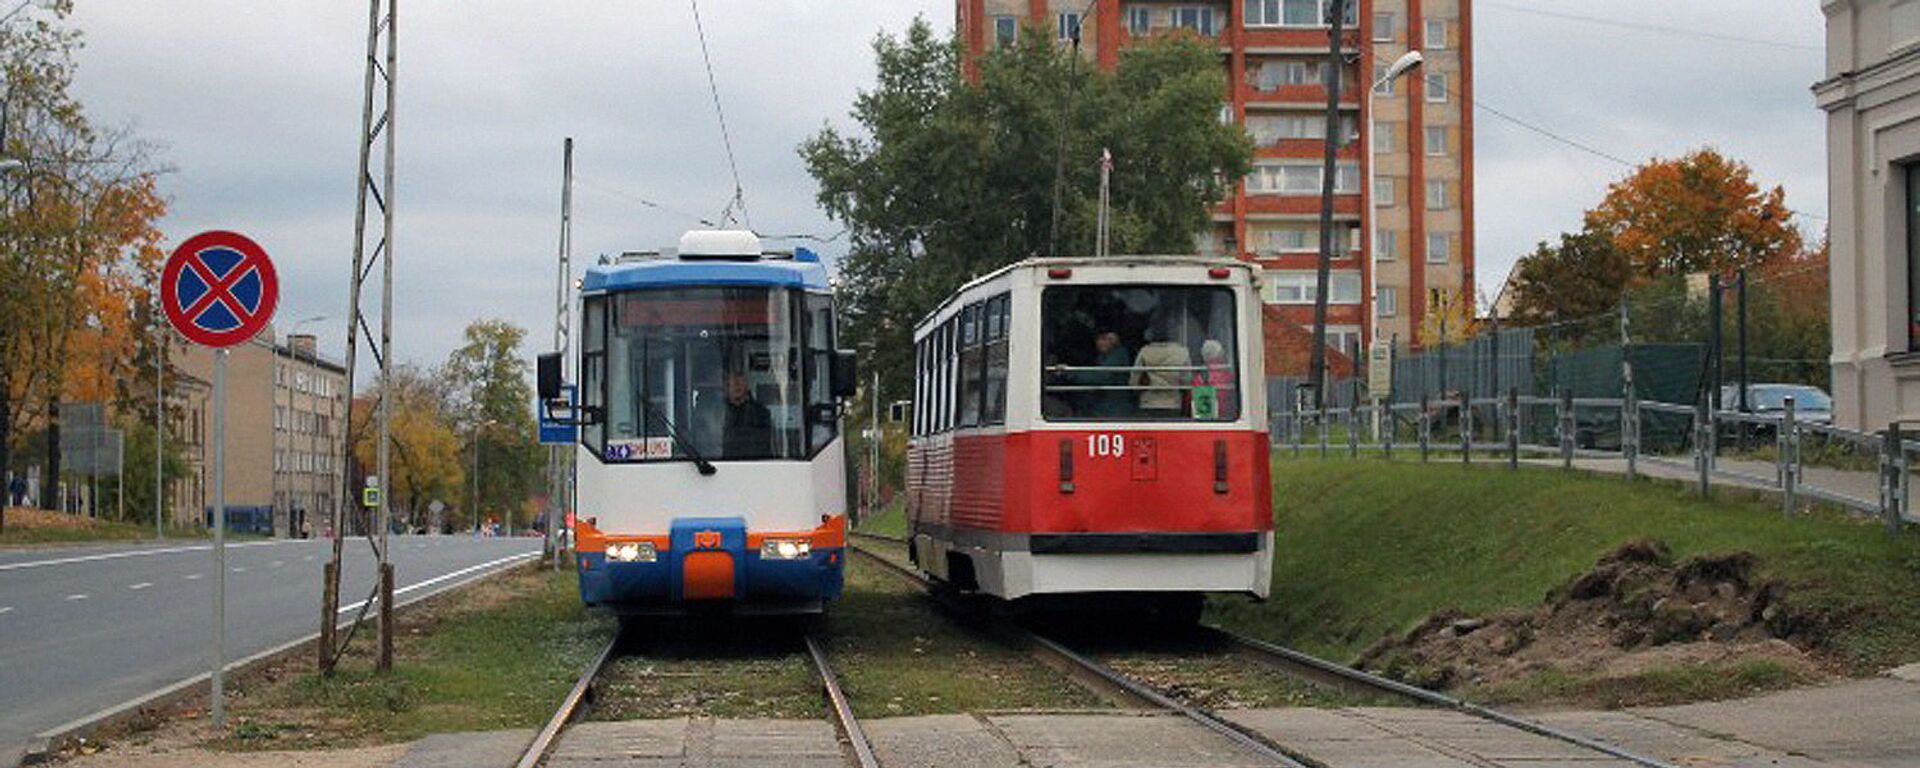 Трамвай на улице, в Даугавпилсе - Sputnik Латвия, 1920, 13.05.2021